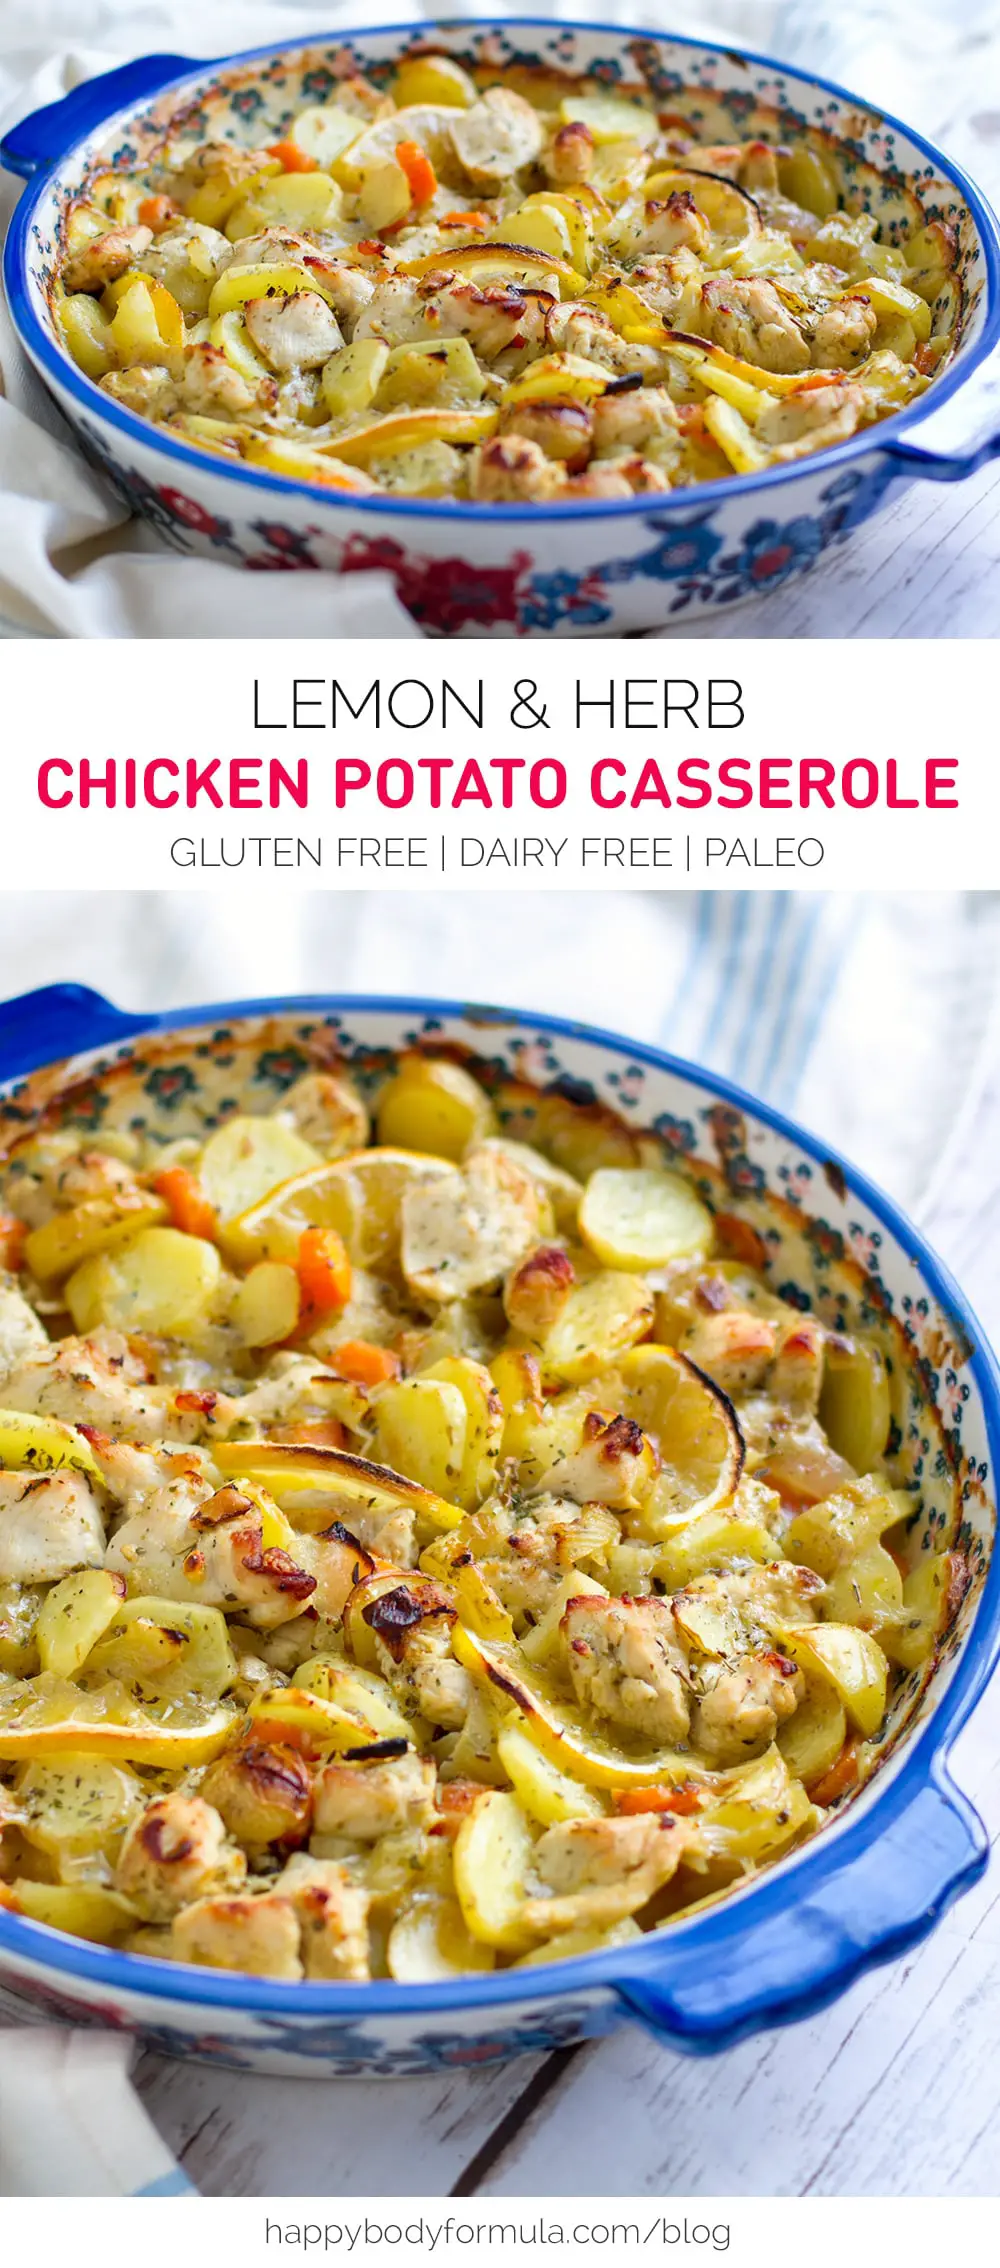 Lemon & Herb Chicken Potato Casserole (dairy-free, gluten-free, paleo friendly)